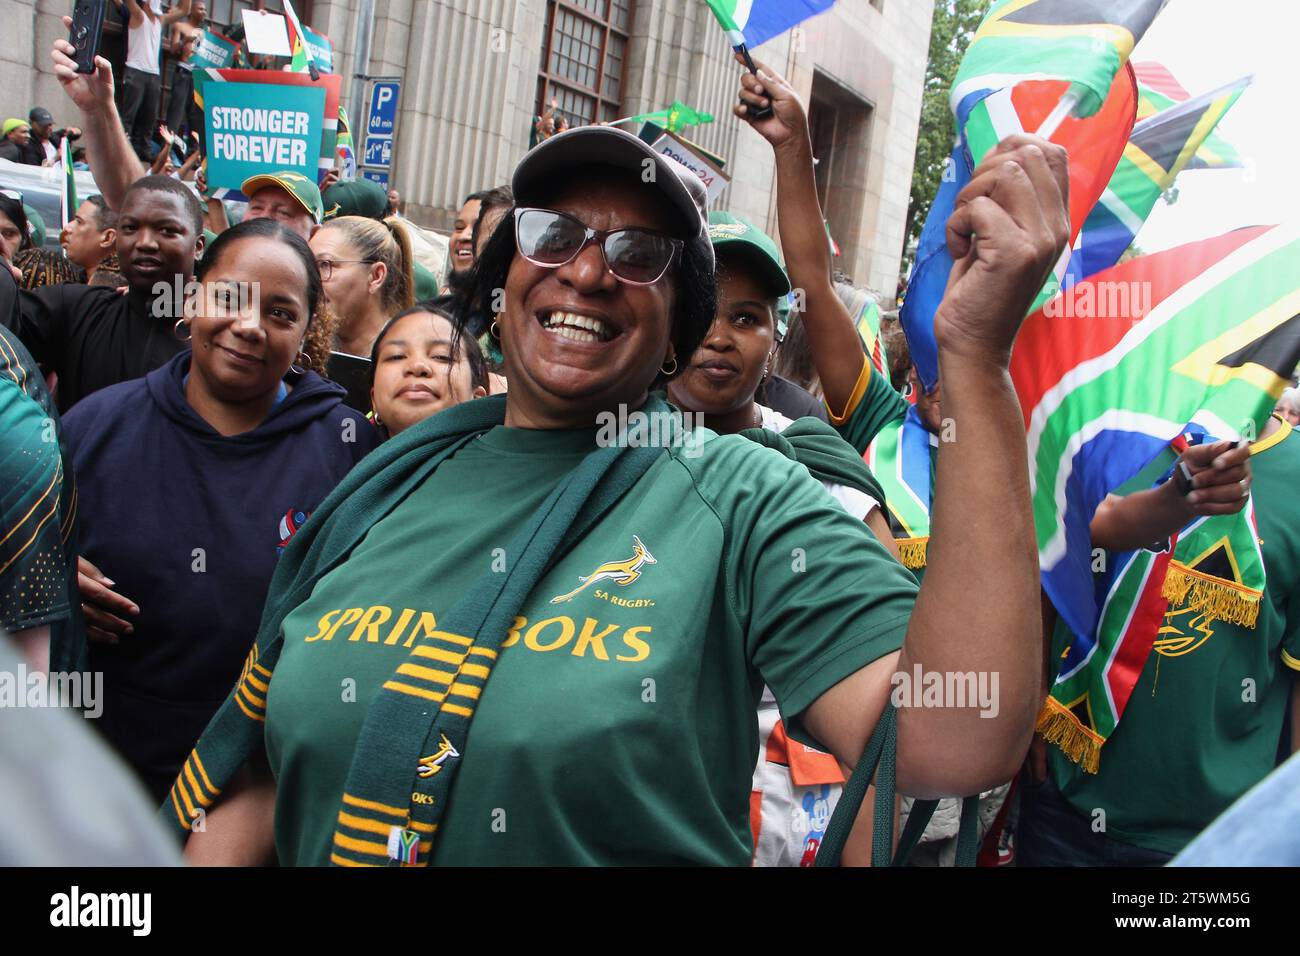 03 novembre 2023 - la foule soutient avec enthousiasme l'équipe de rugby Springbok dans les rues du Cap. L’équipe de rugby sud-africaine est revenue avec la coupe du monde pour la 4e fois. Cela faisait partie de leur tournée victorieuse en Afrique du Sud. Banque D'Images